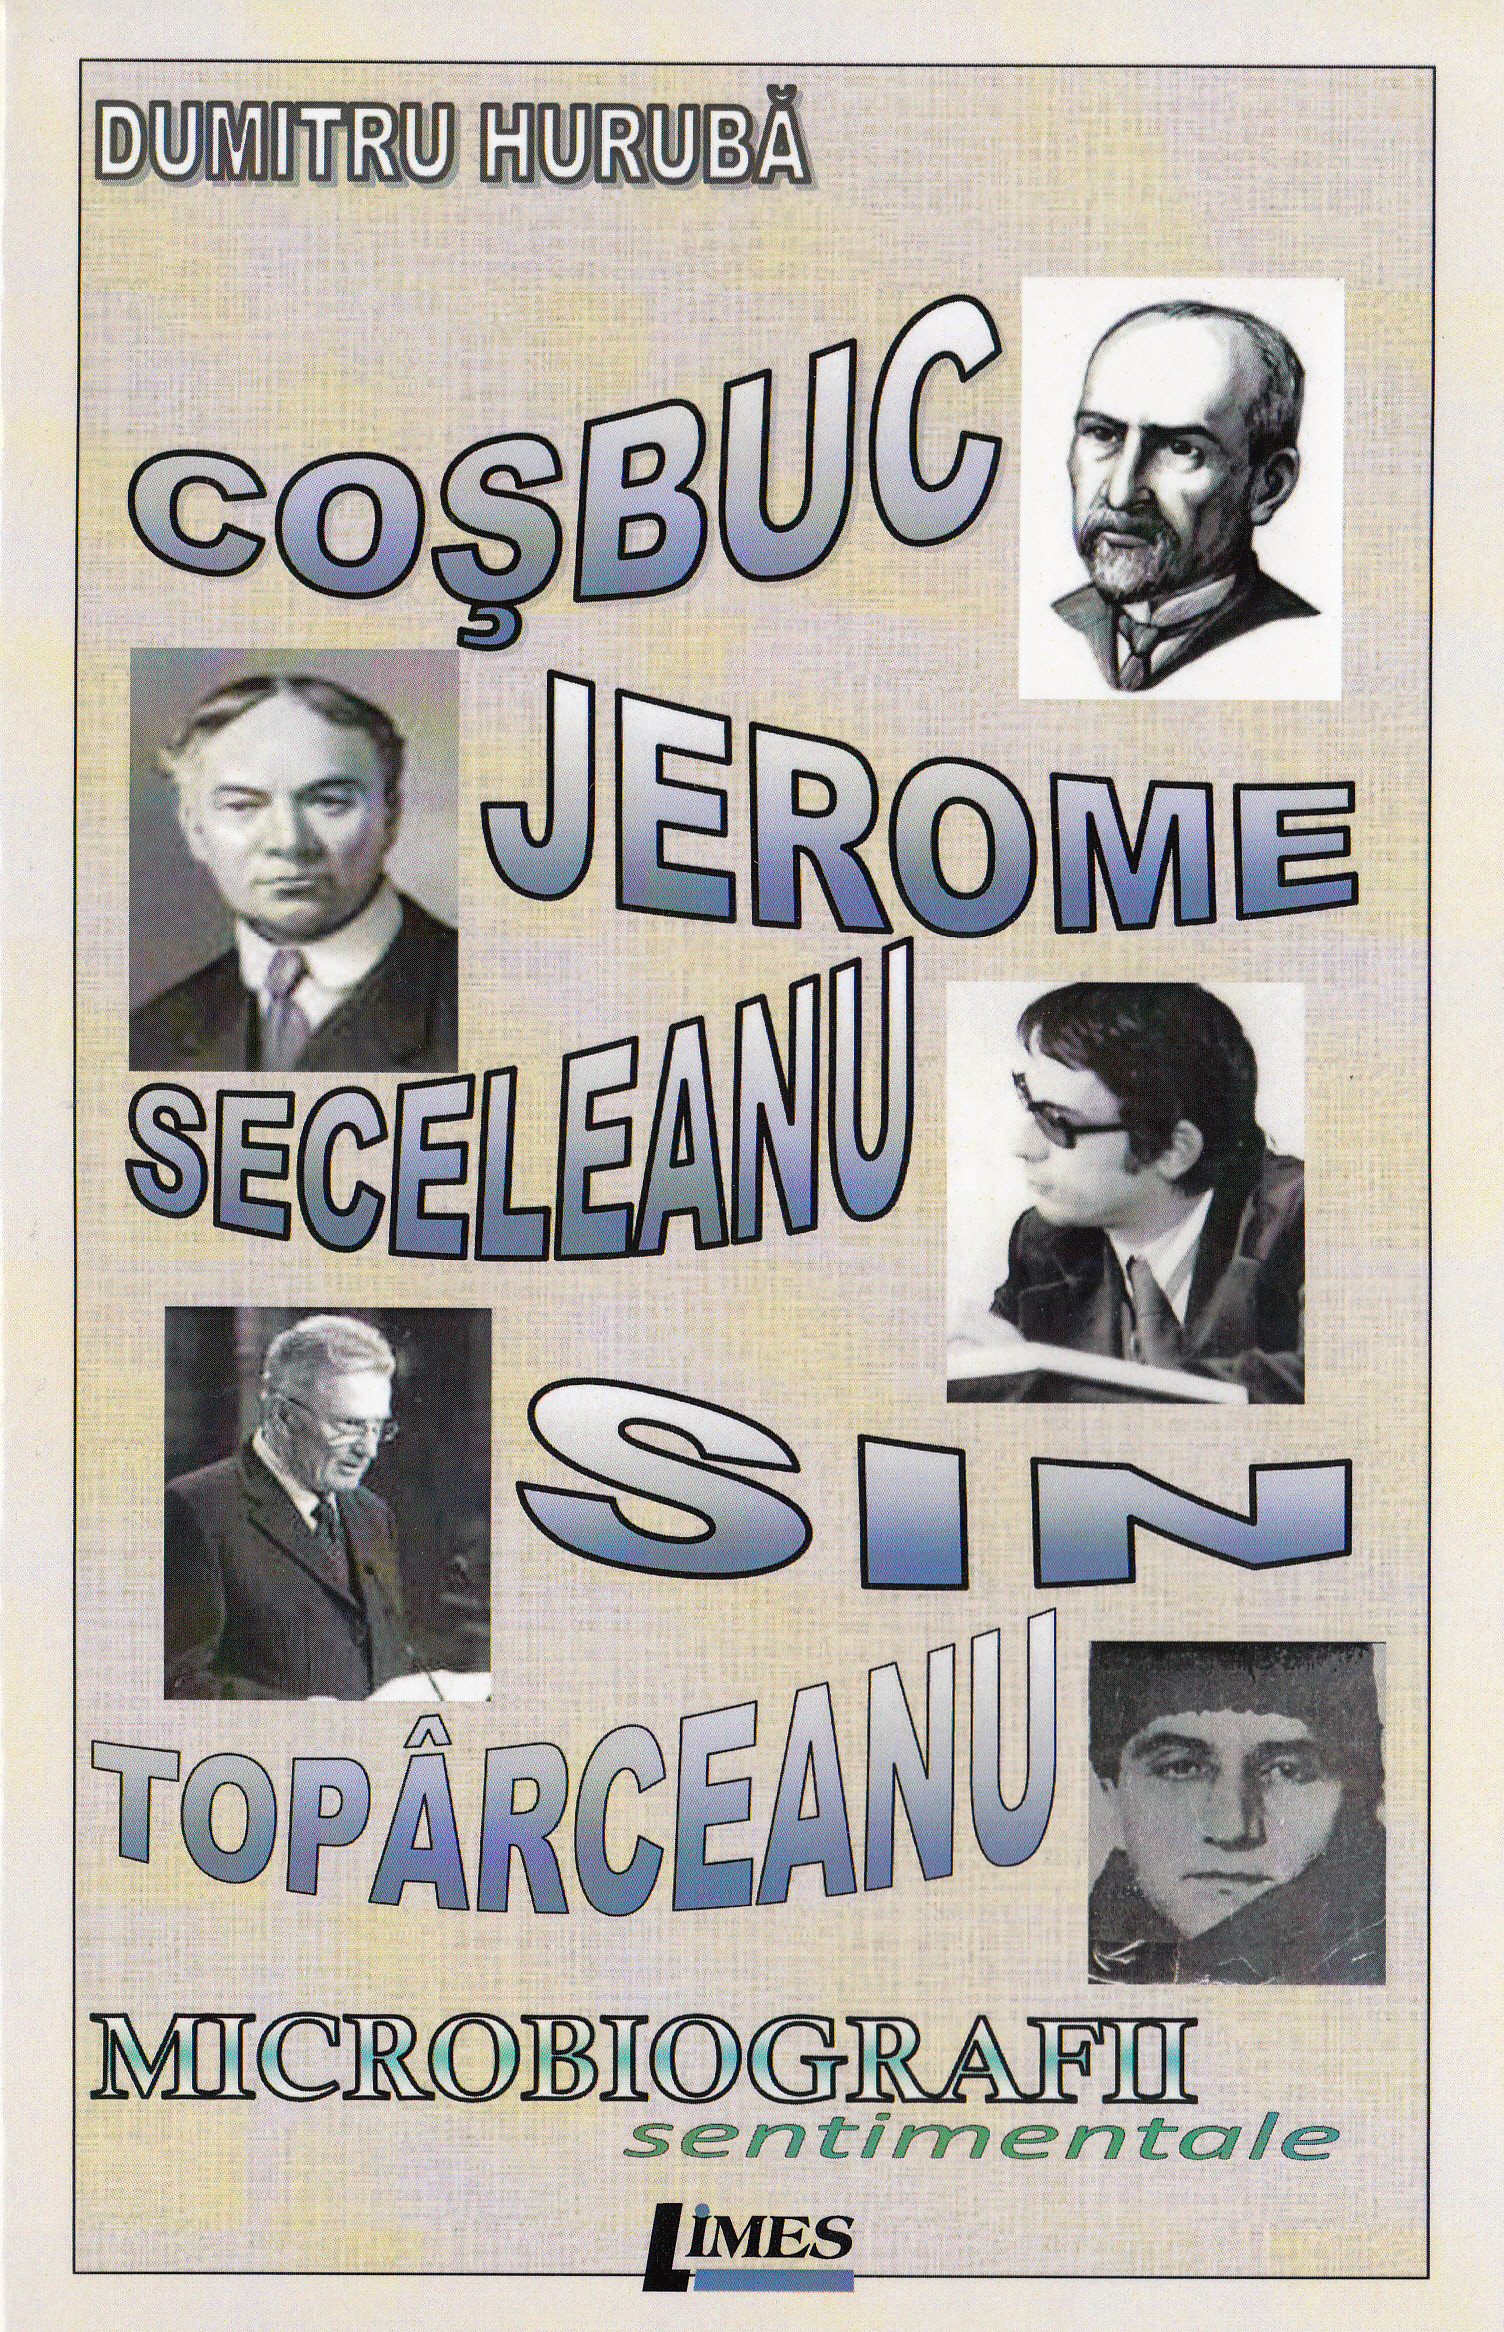 Cosbuc, Jerome, Seceleanu, Sin, Toparceanu! Microbiografii sentimentale - Dumitru Huruba